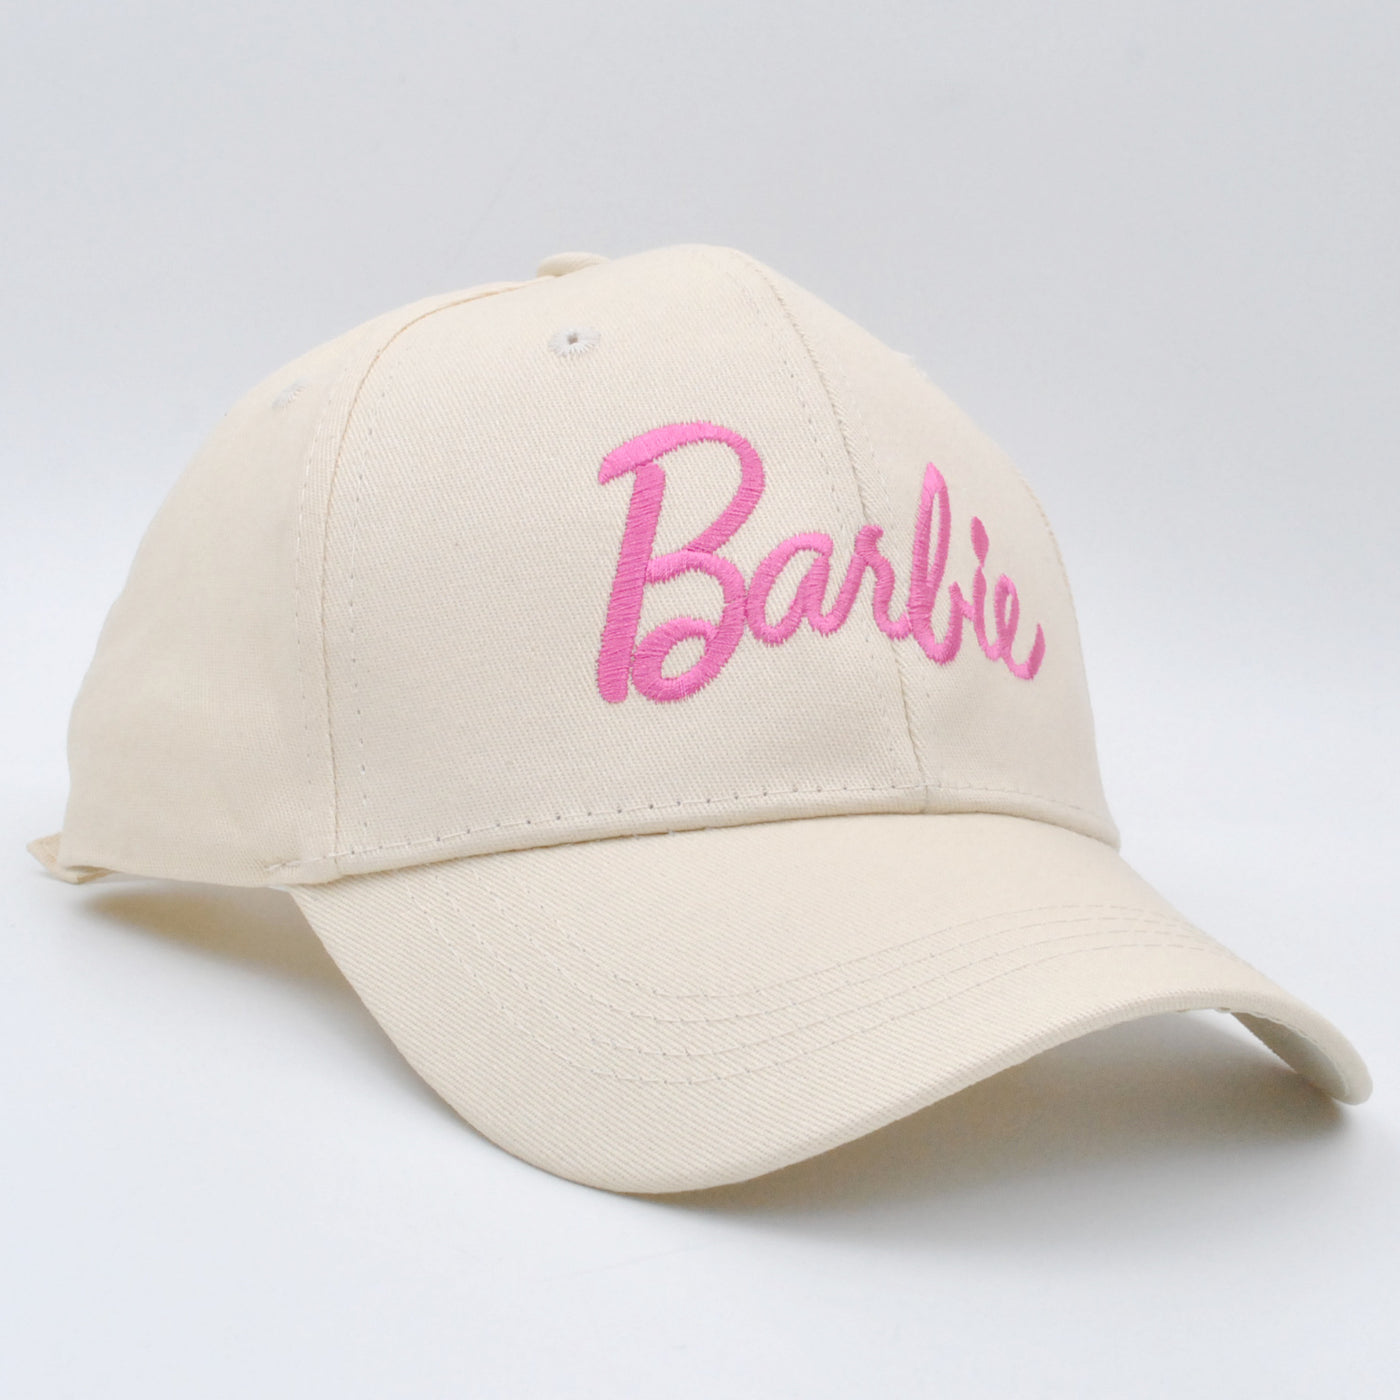 Barbie Embroidery Cap Adjustable Baseball Hat (Adjustable, Khaki)